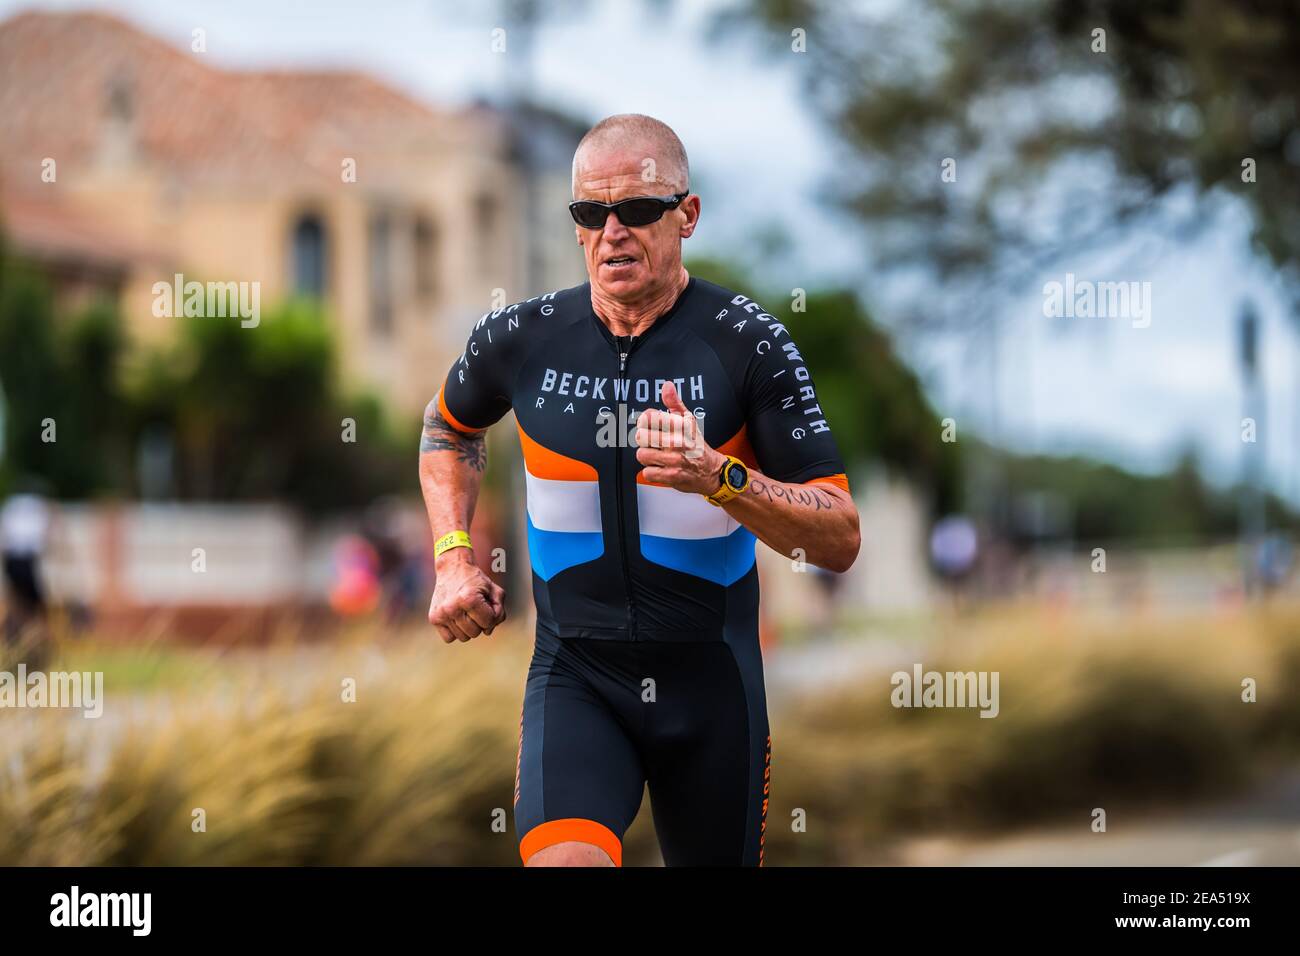 60+ Alterskategorie Konkurrent, Mick Varker läuft im Triathlon-Sprint, während der 2XU Triathlon Series 2021, Rennen 2 am Sandrigham Beach. Stockfoto